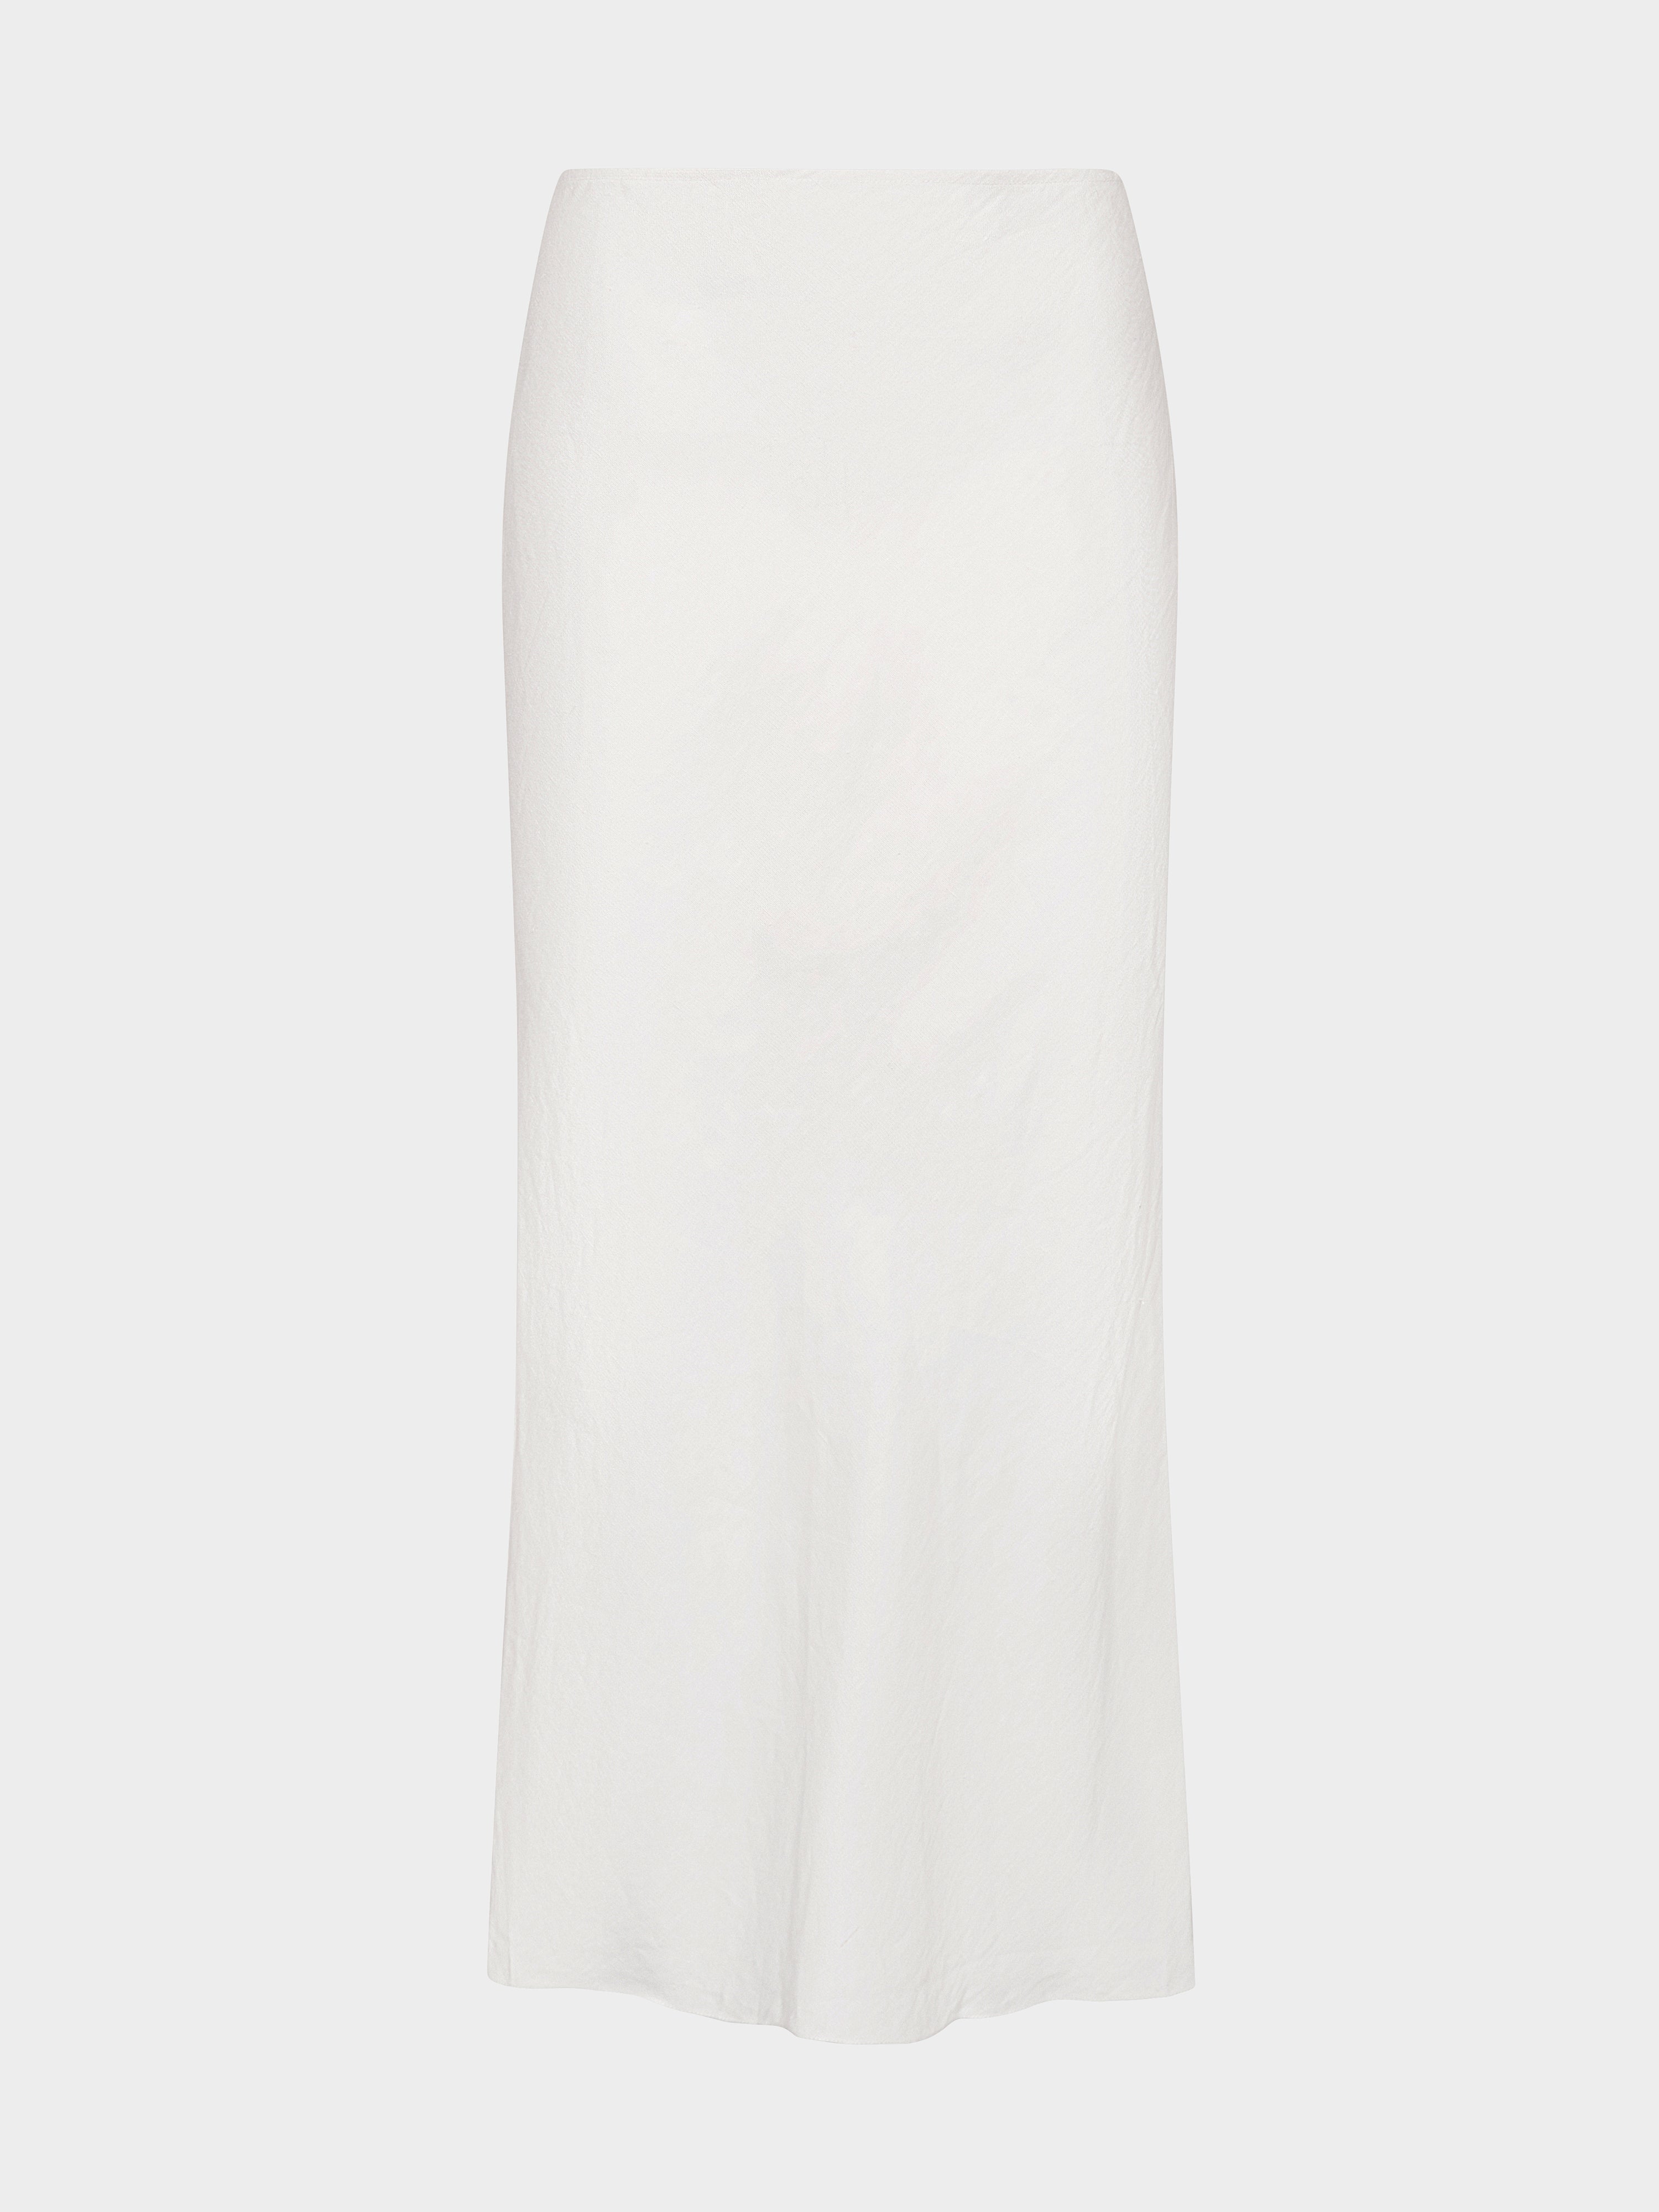 Carine B Skirt in Ivory